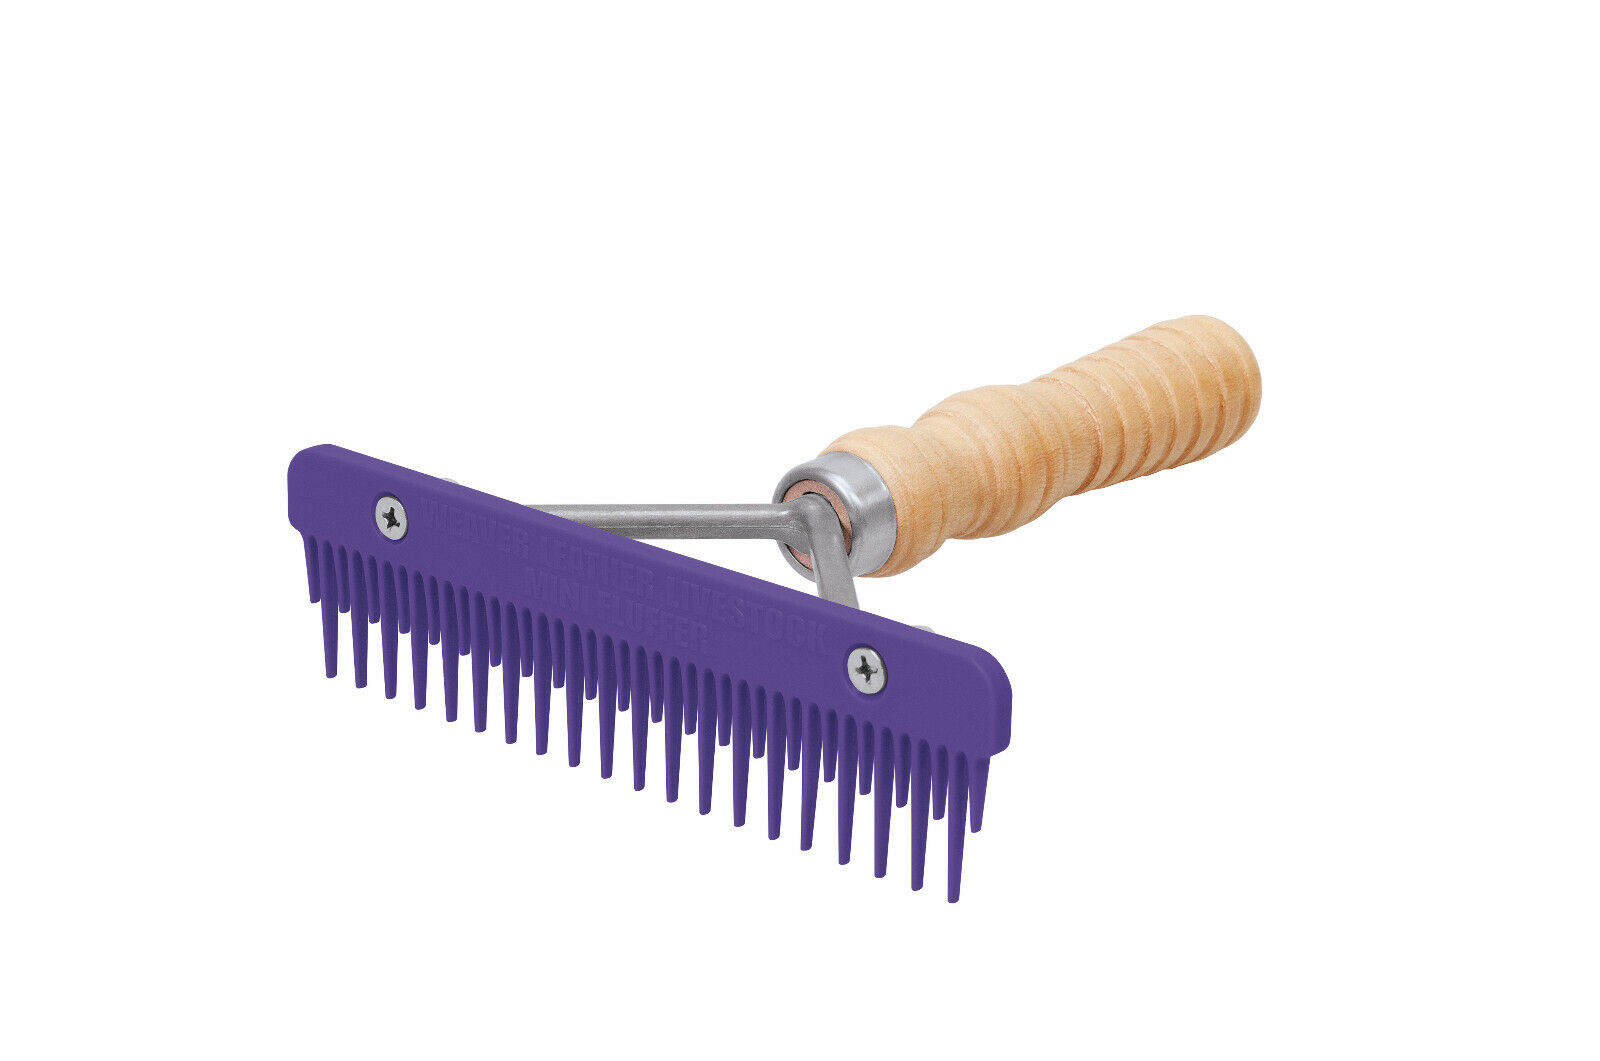 Weaver Leather Mini Fluffer Comb, Plastic Comb, Wood Handle, 69-6046 Purple